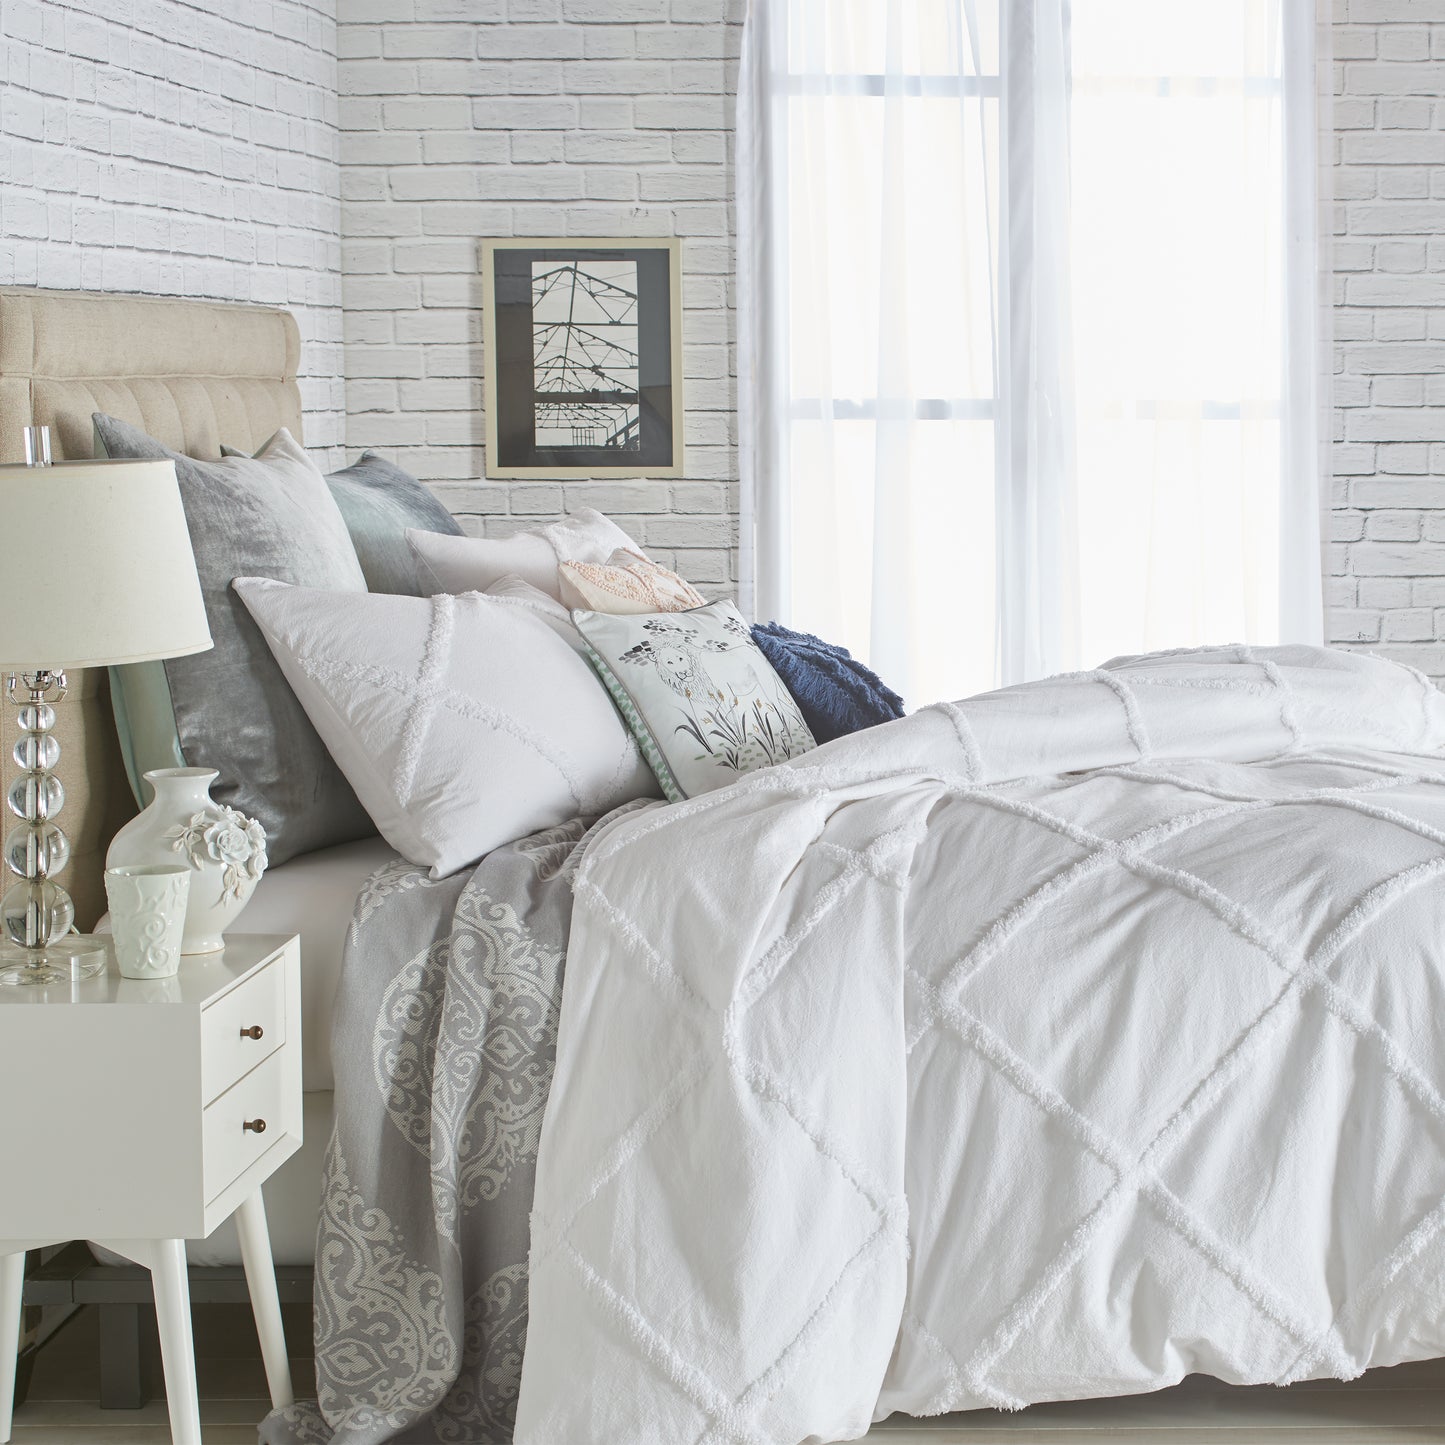 Peri Home Chenille Lattice Comforter Bedding Collection white